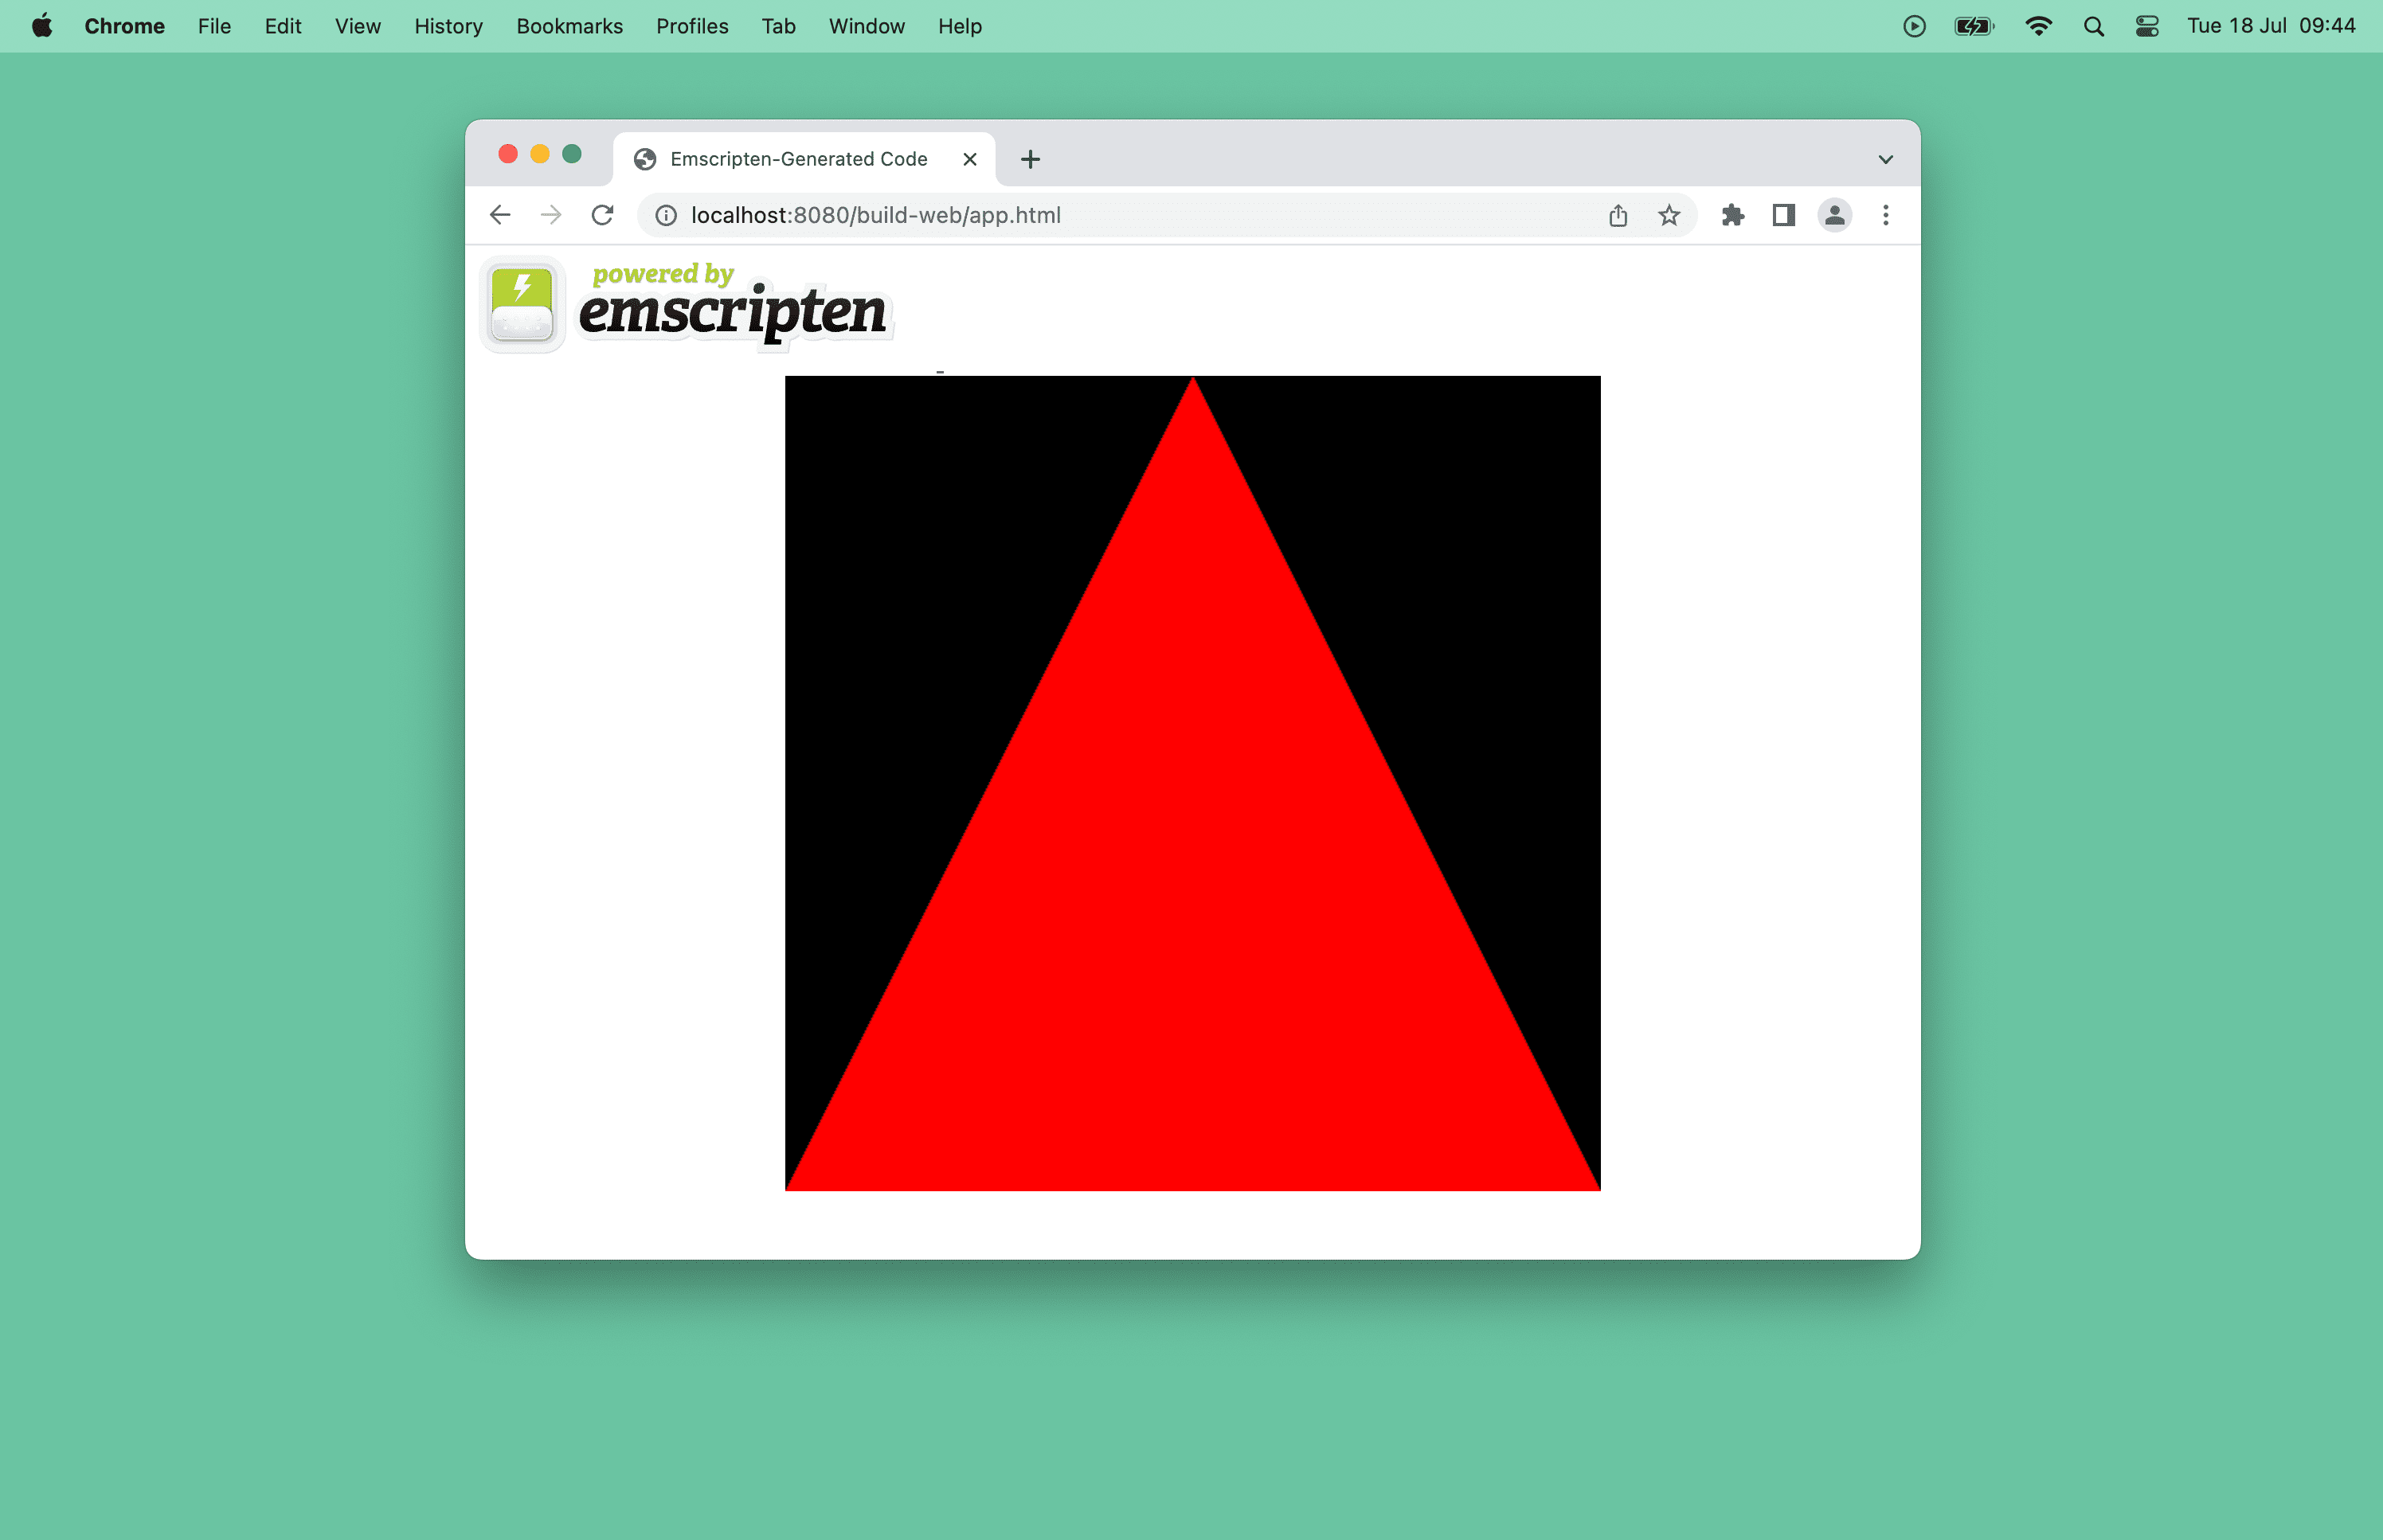 Captura de pantalla de un triángulo rojo en una ventana del navegador.